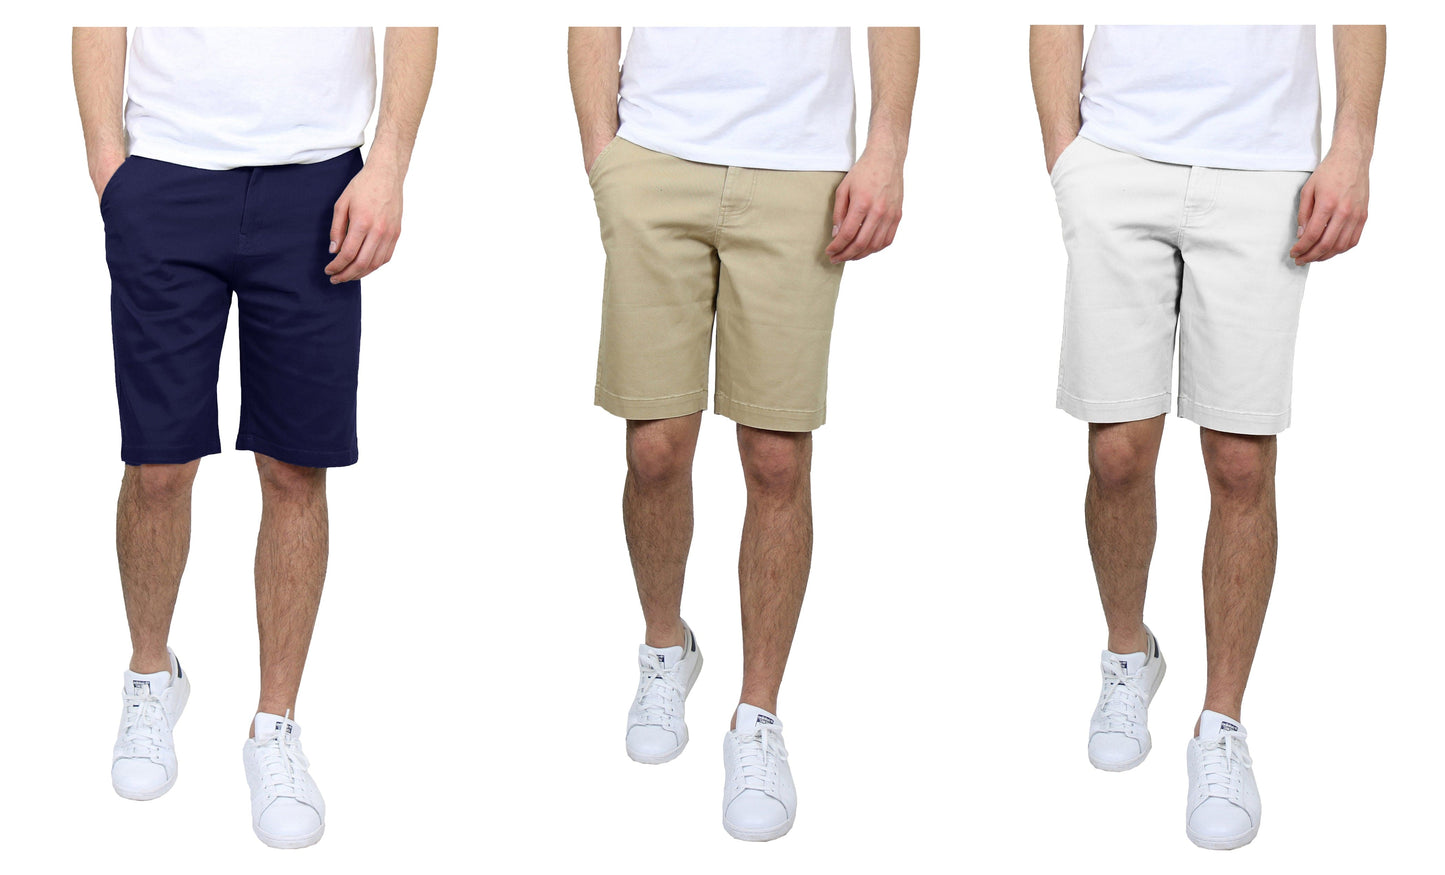 Paquete de 3 pantalones cortos chinos elásticos de algodón con frente plano y corte entallado para hombre (tallas 30-42)